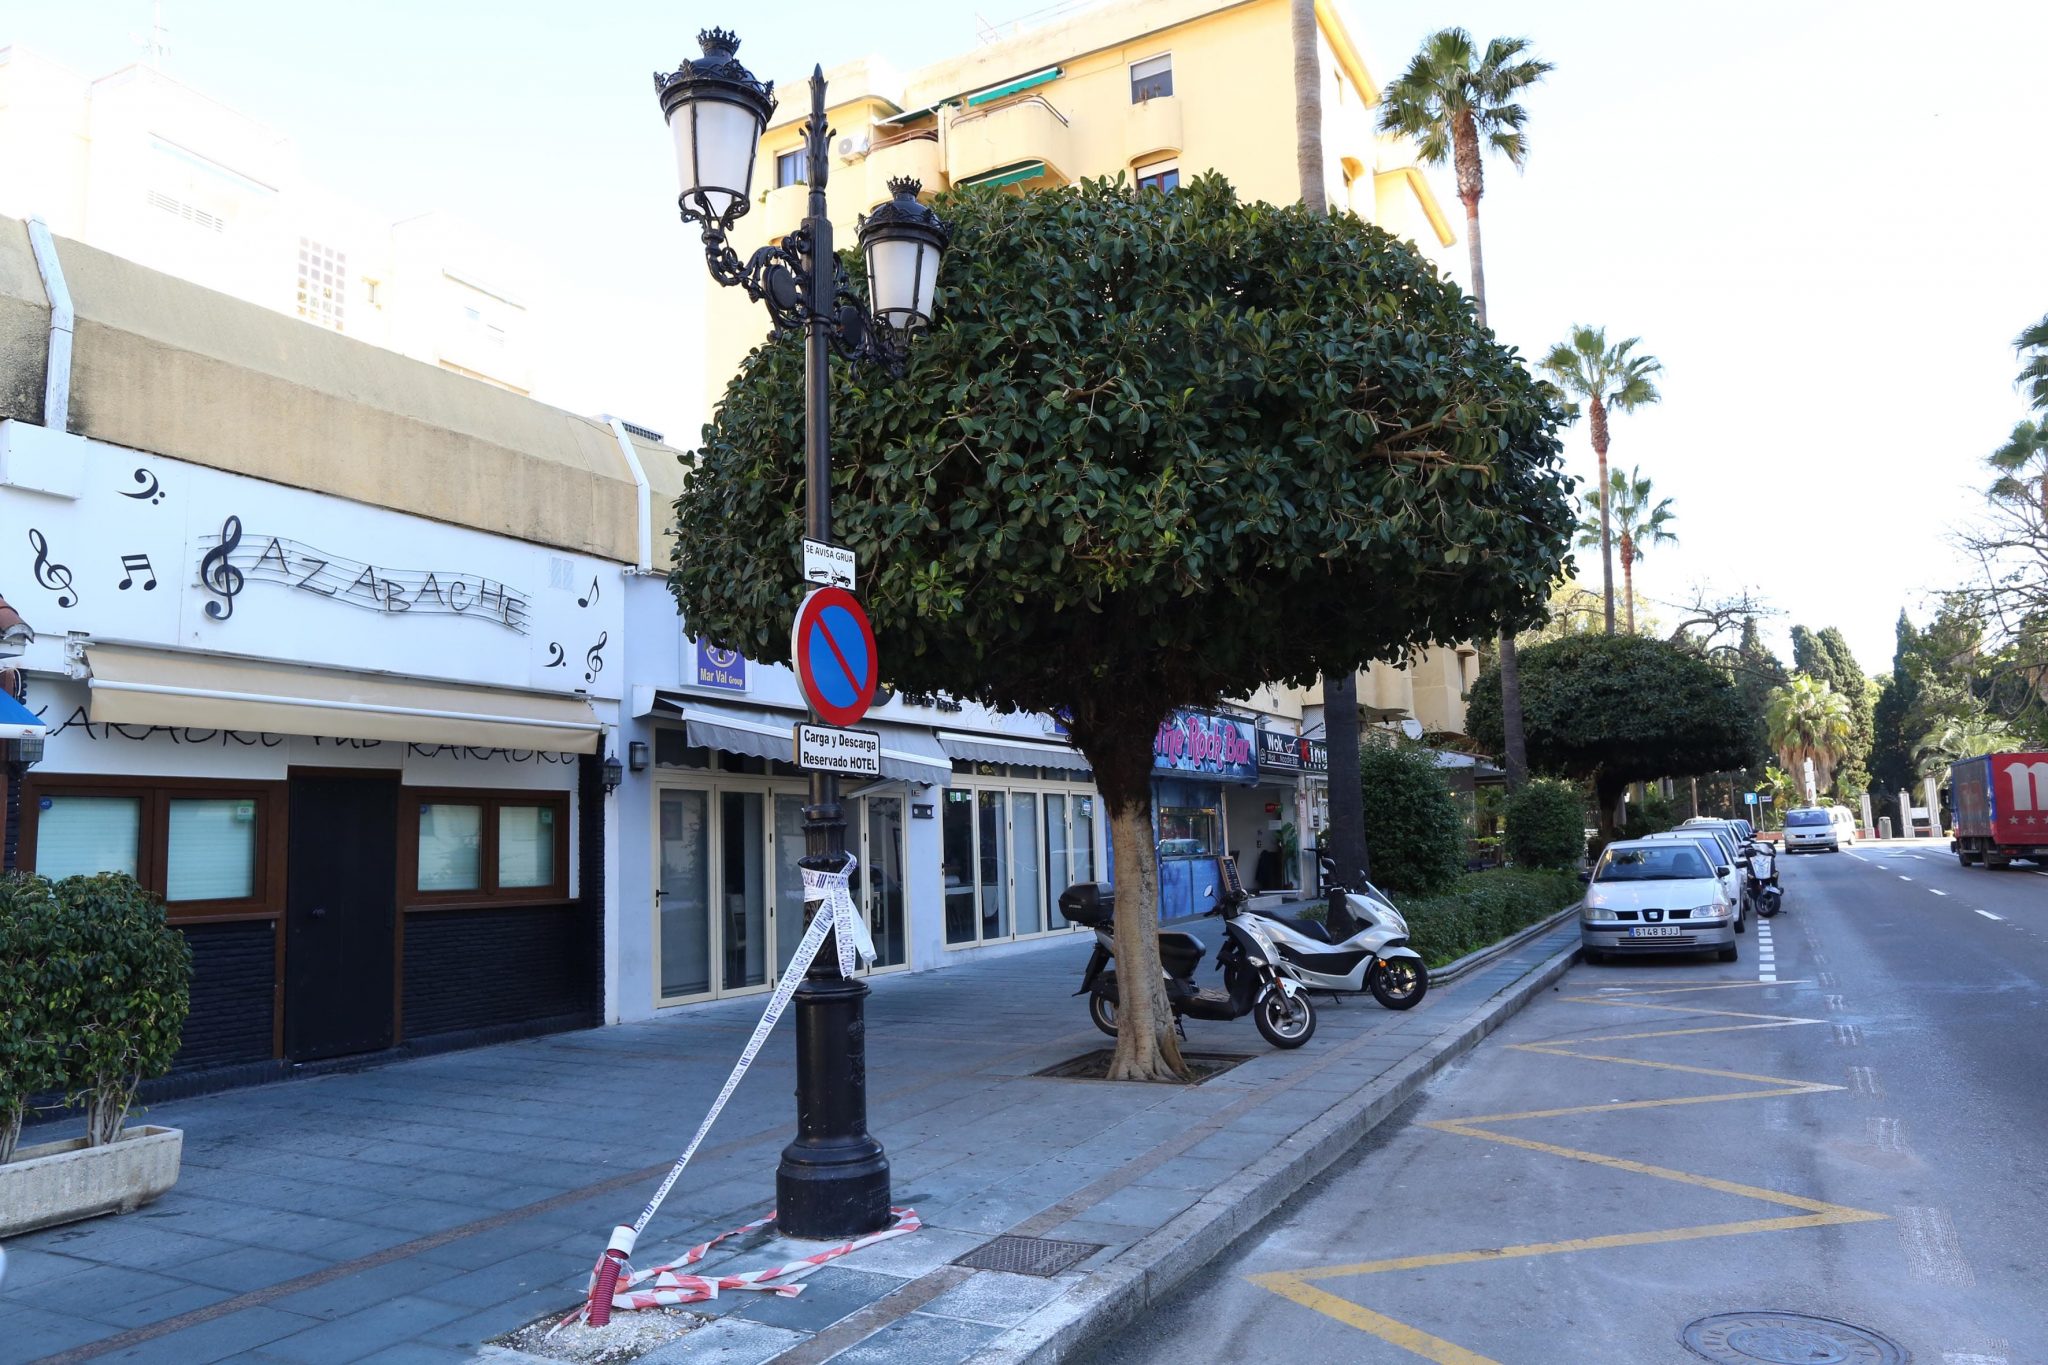 Mejoran la iluminación y eficiencia energética en varios viales de Marbella